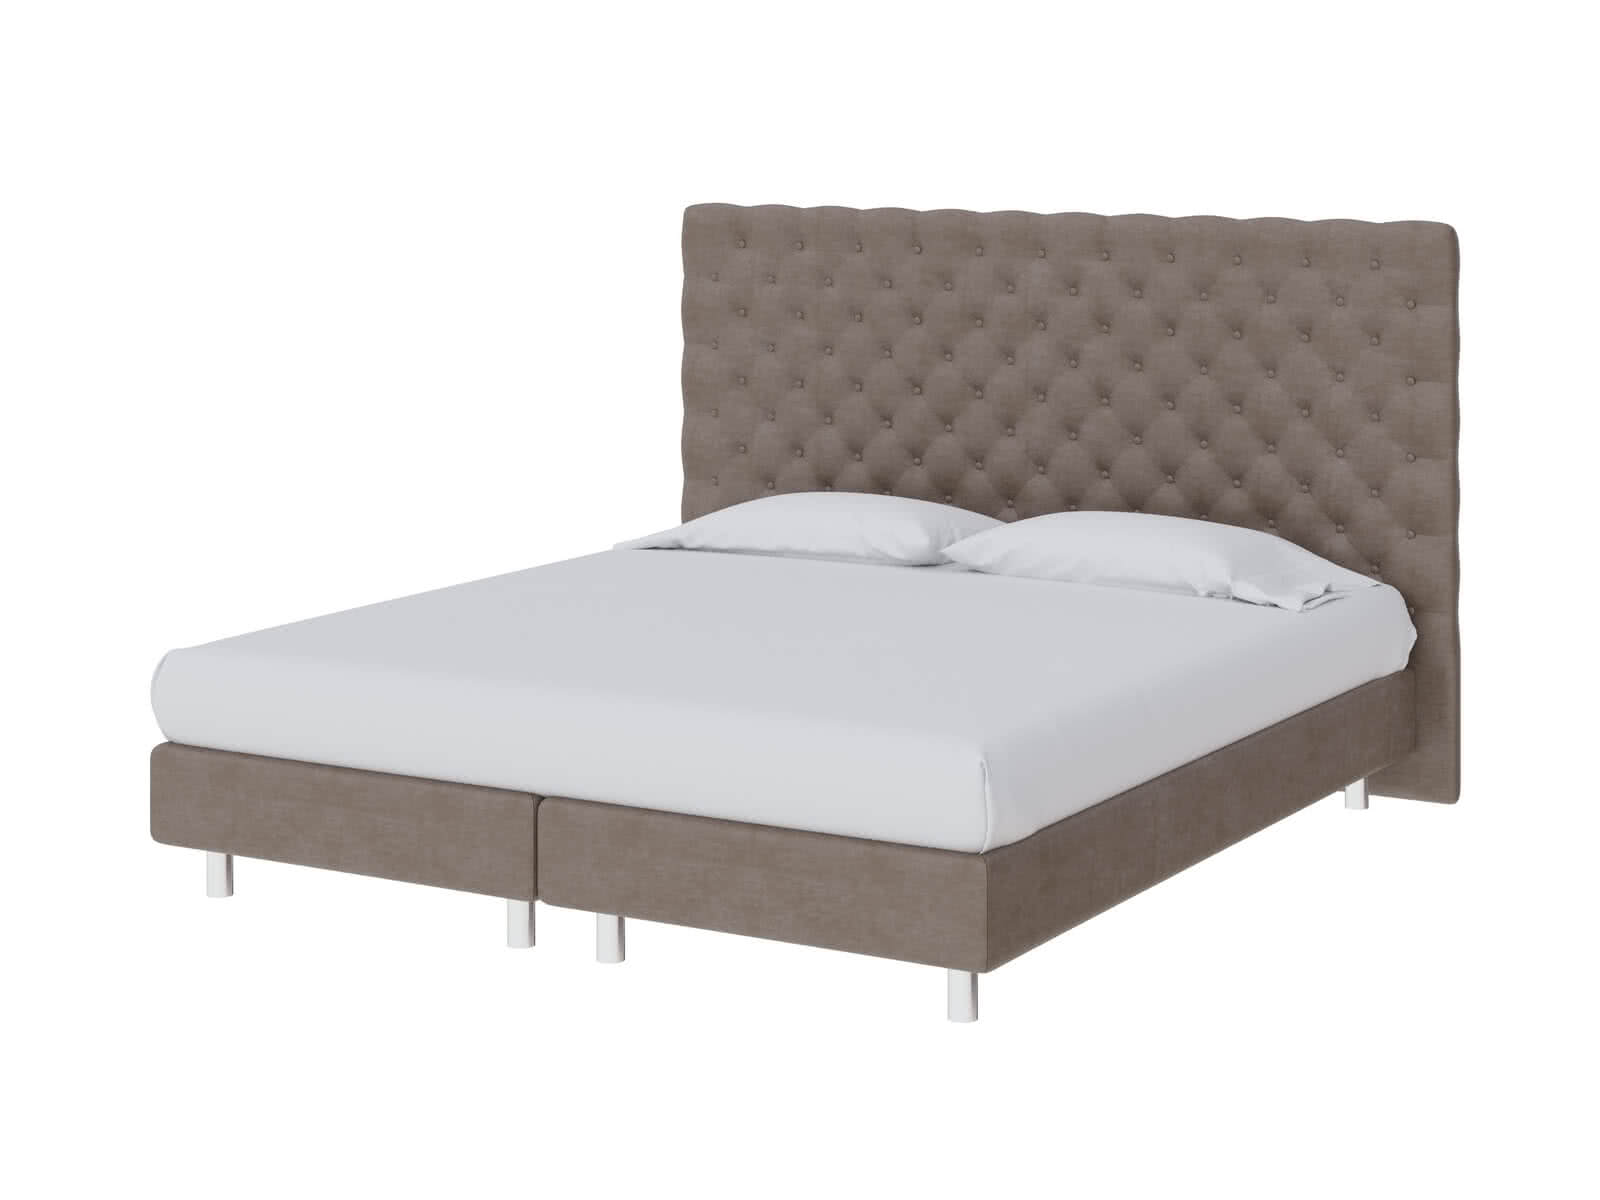 Купить кровать ProSon Кровать ProSon Europe Paris Lift, Лофти Лён 180 х 200 см Лофти Лён дешево на официальном сайте